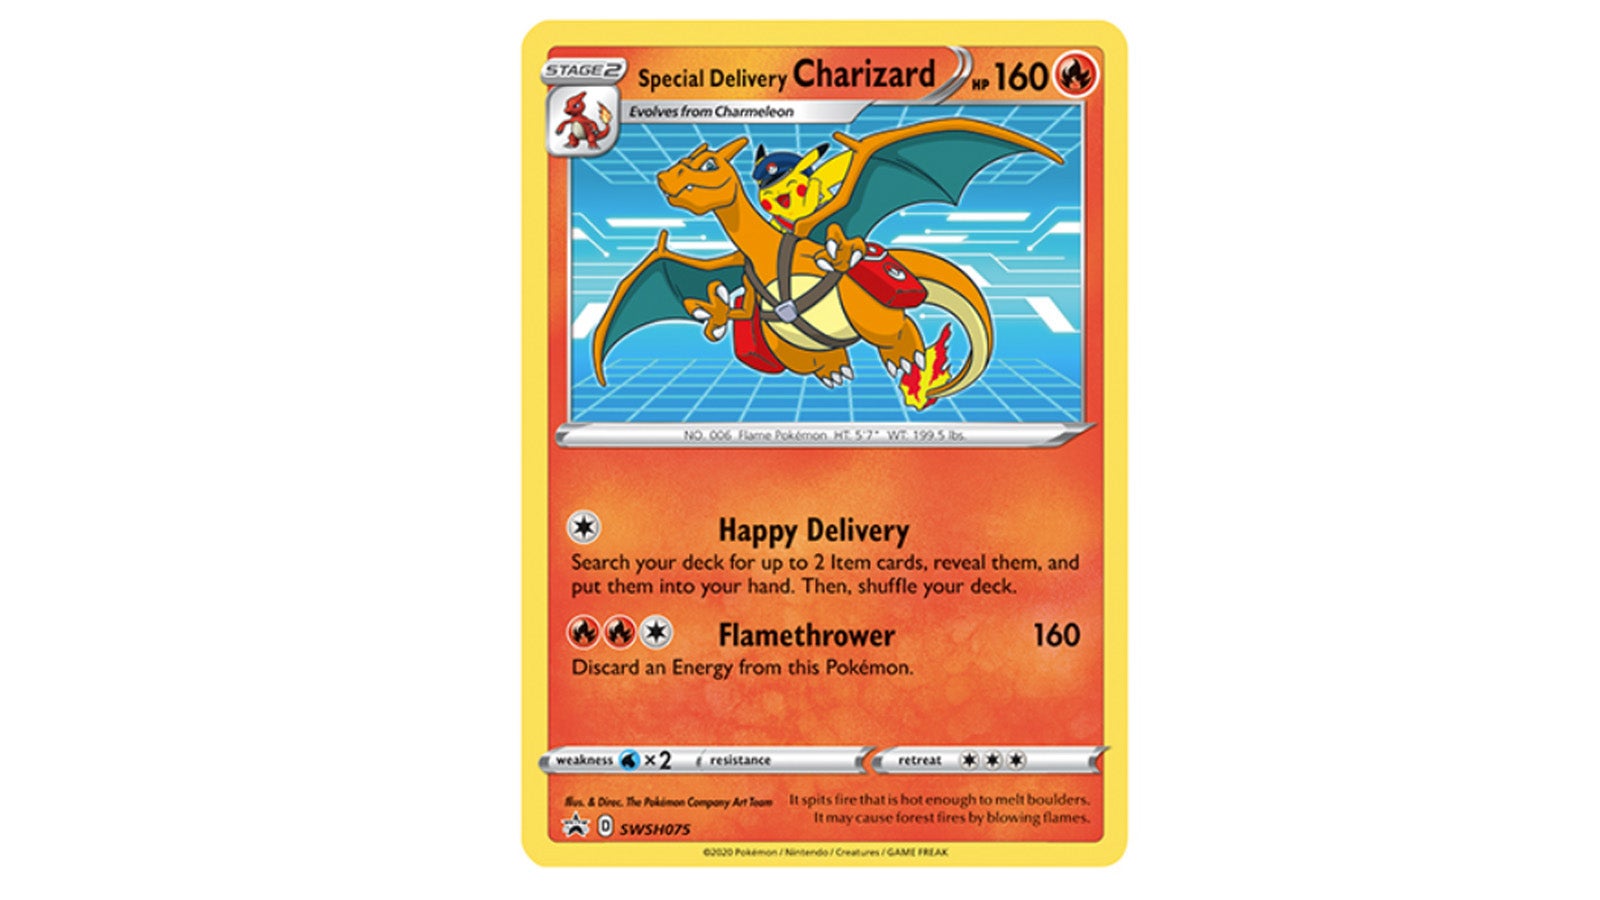 O Pokémon Middle tem um cartão promocional exclusivo de Charizard atraente